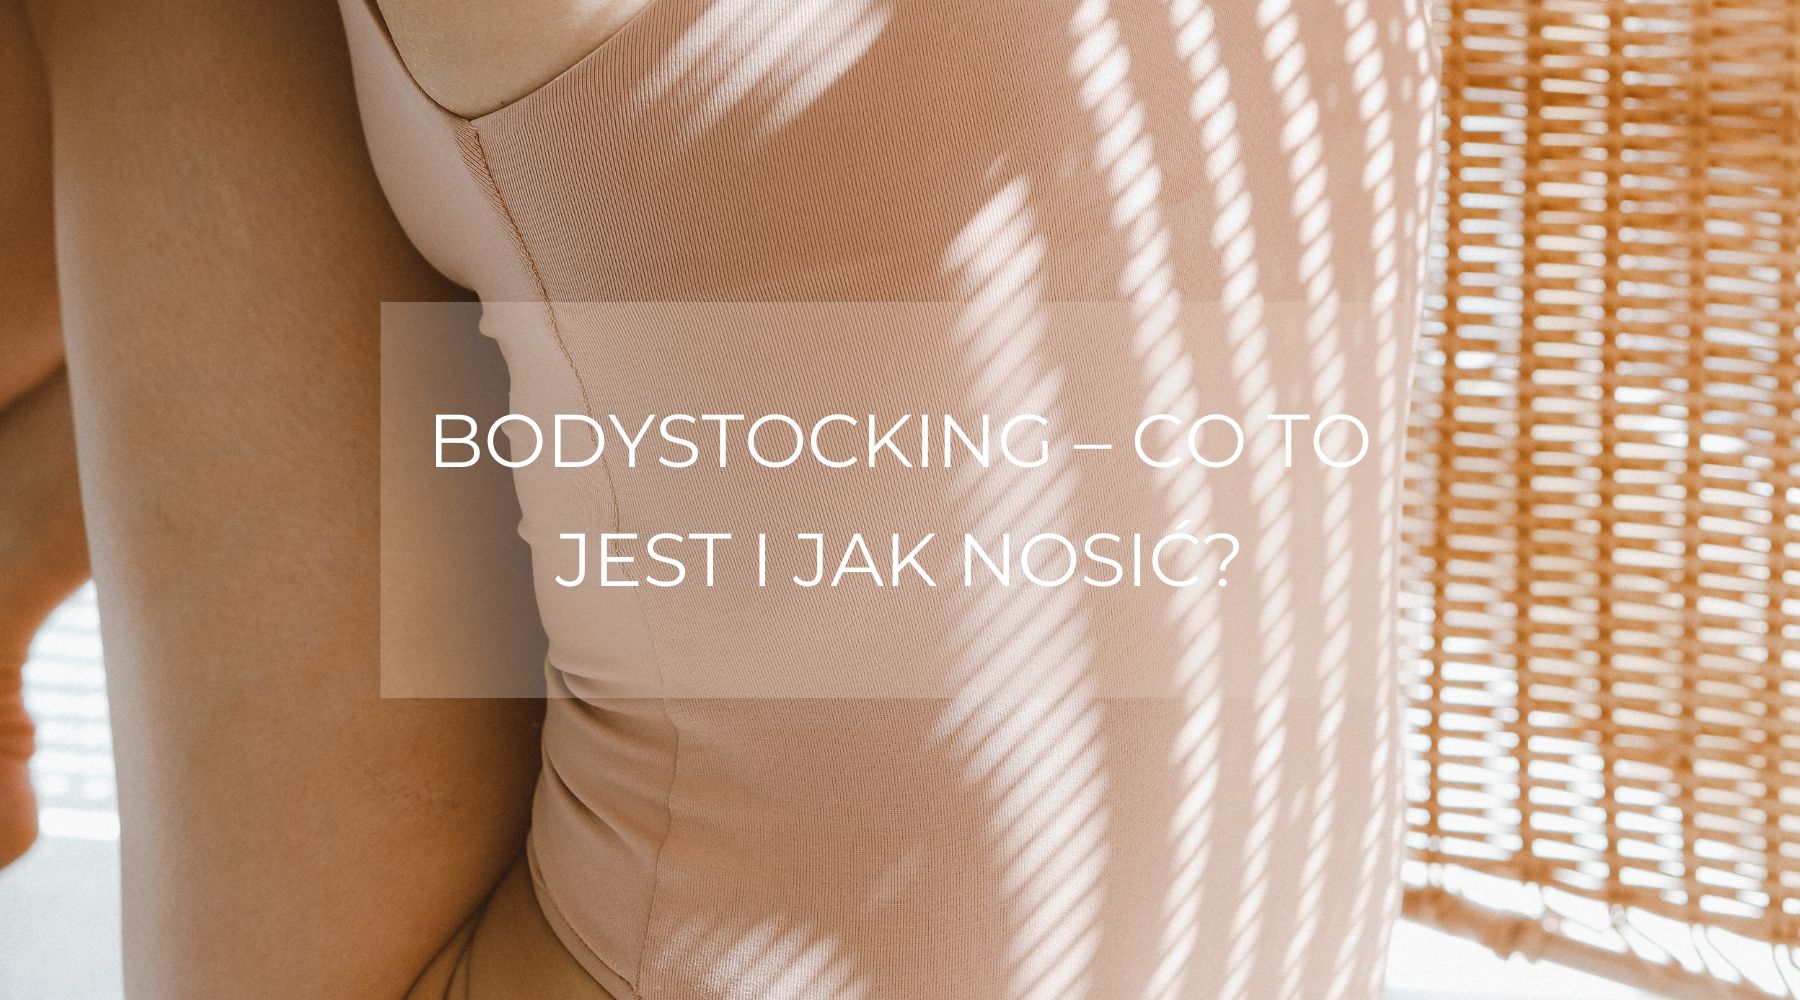 Bodystocking – co to jest i jak nosić?